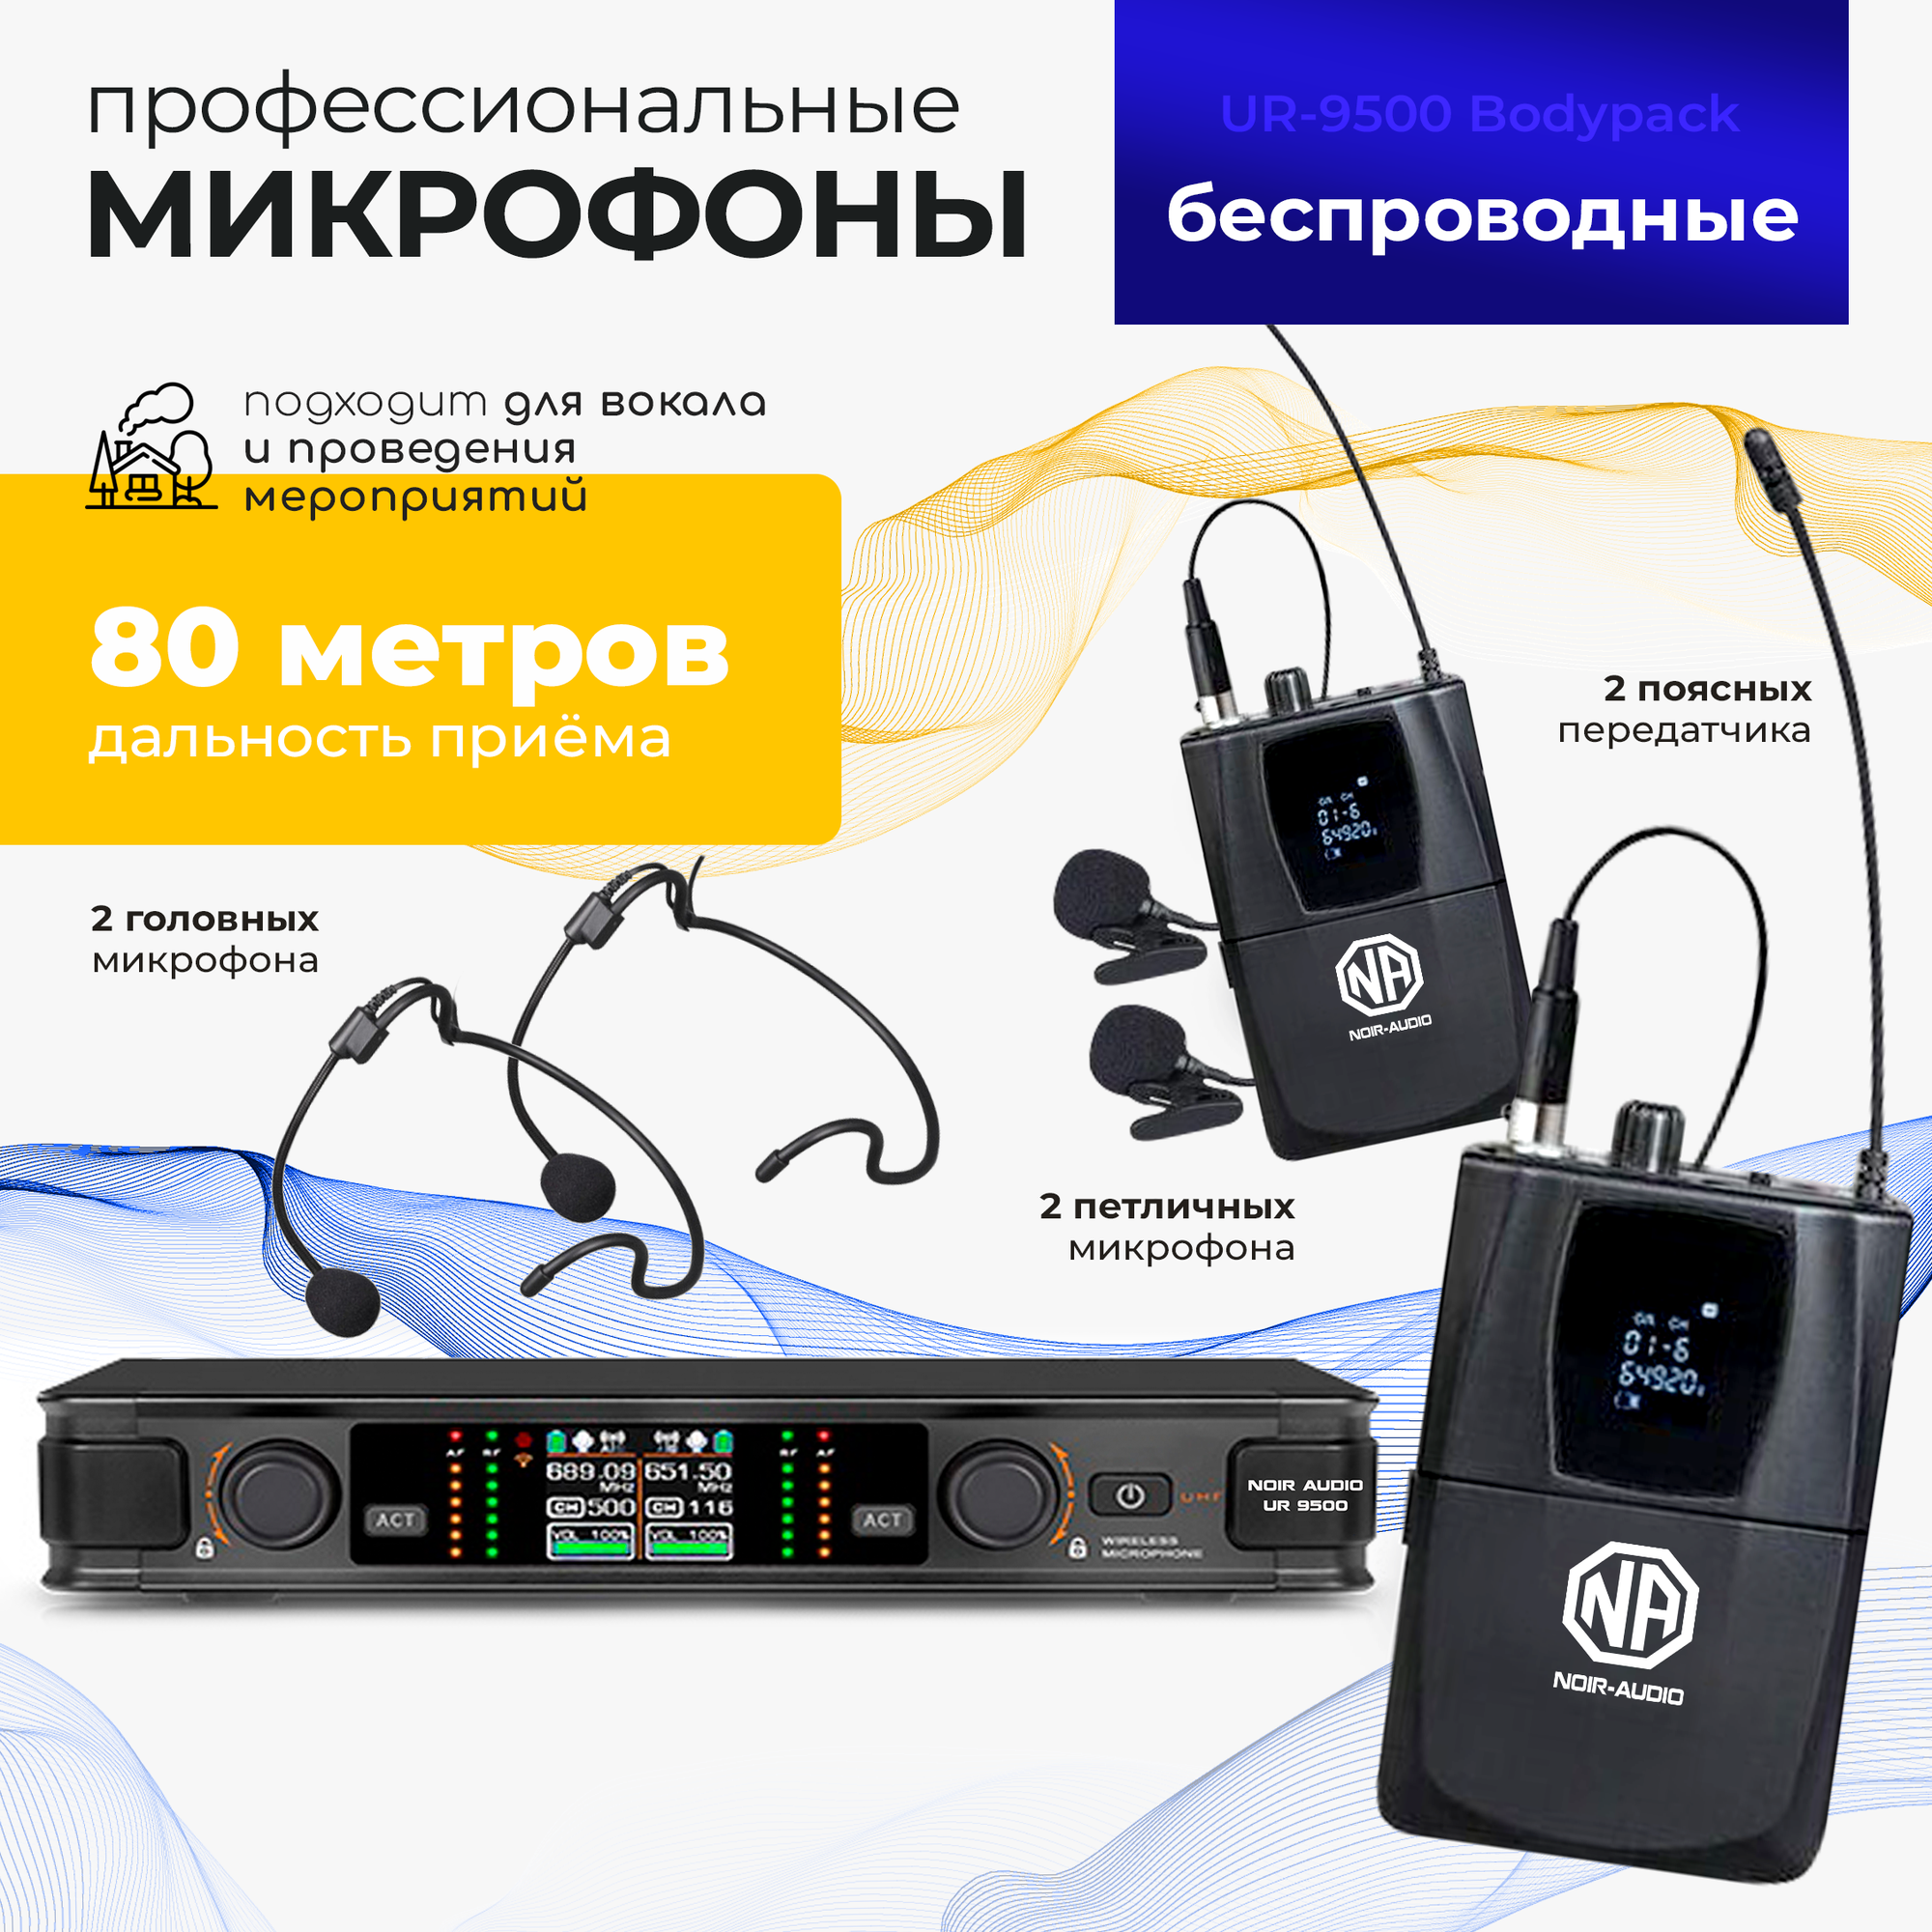 Беспроводной микрофон NOIR-audio UR-9500 Bodypack для вокала, для караоке, для мероприятий c двумя головными и петличными радиомикрофонами